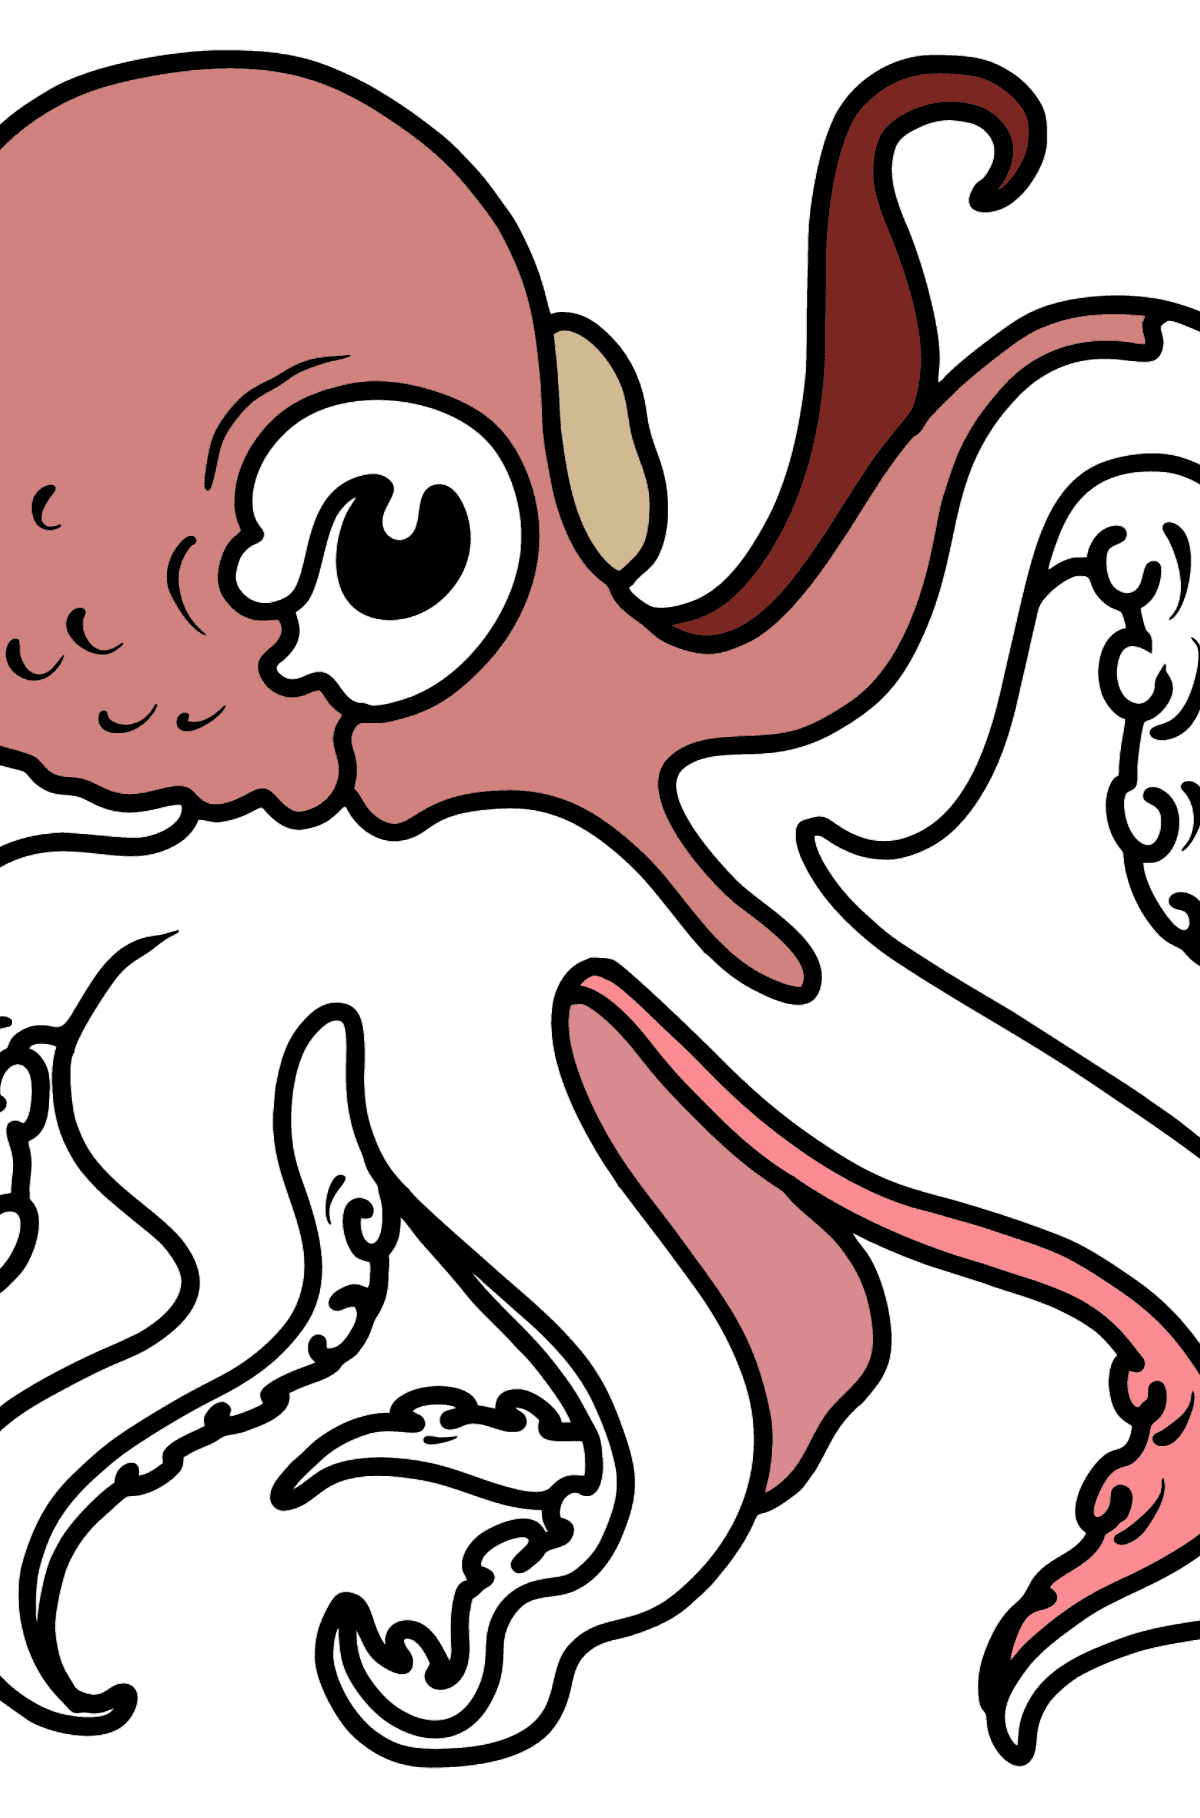 Octopus Ausmalbild - Malvorlagen für Kinder